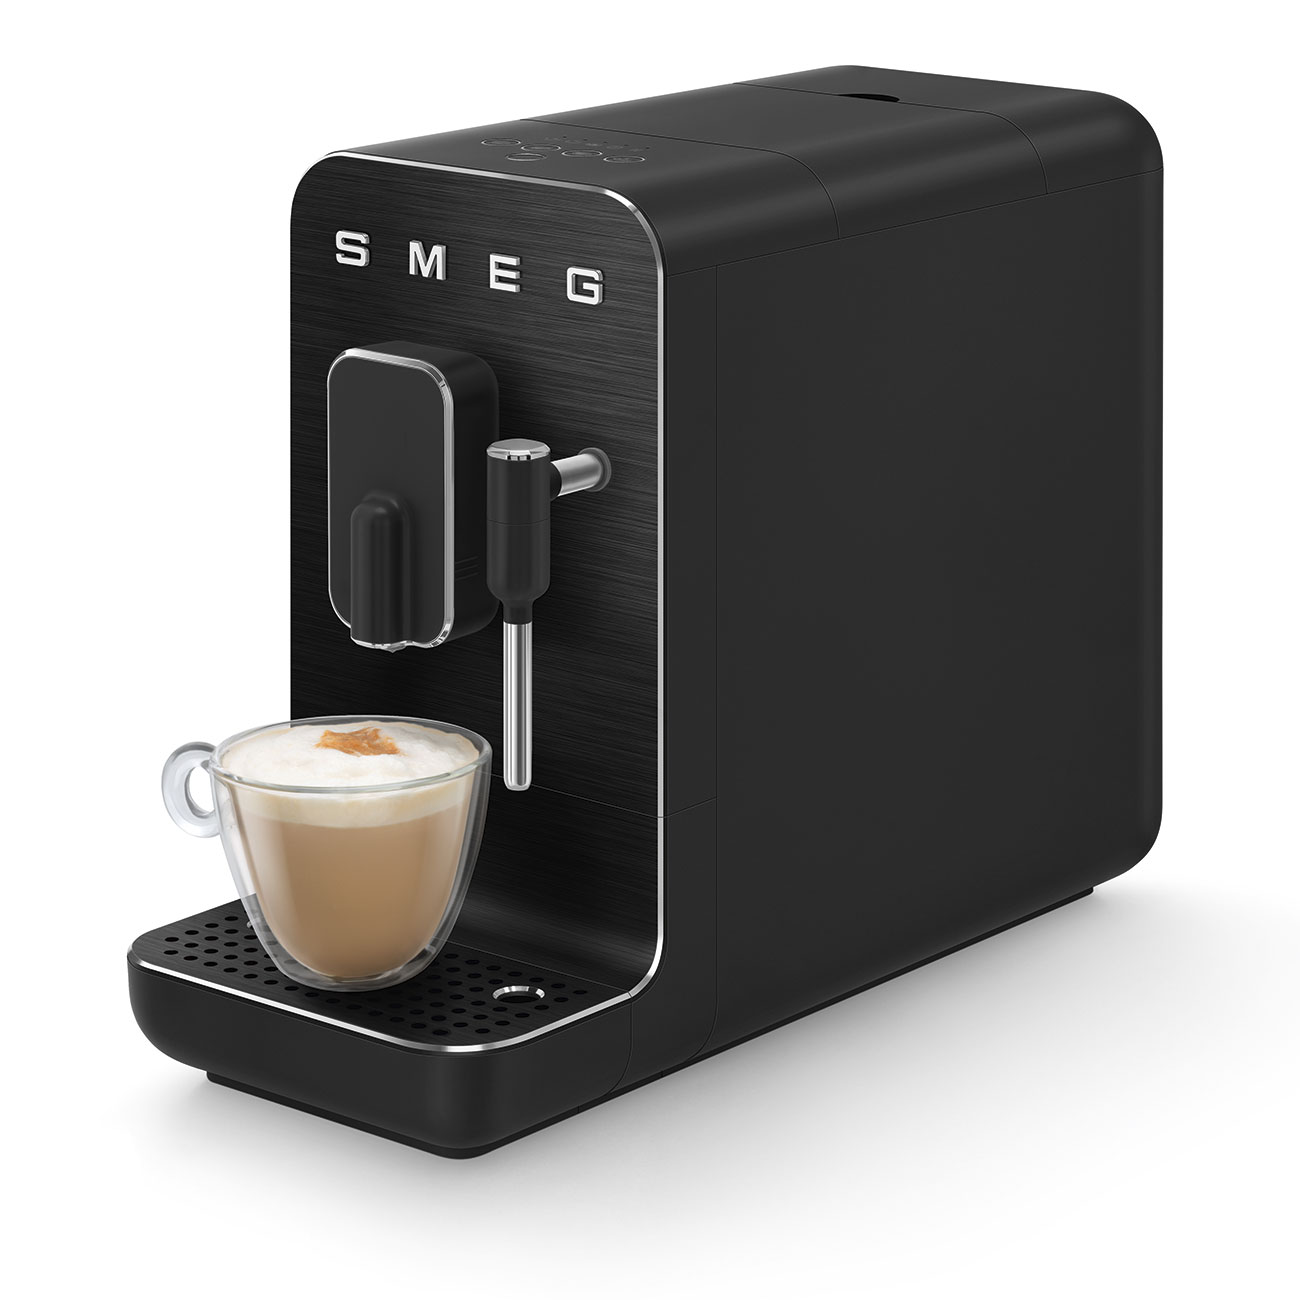 Kompakt-Kaffeevollautomat, Full Black-Matt